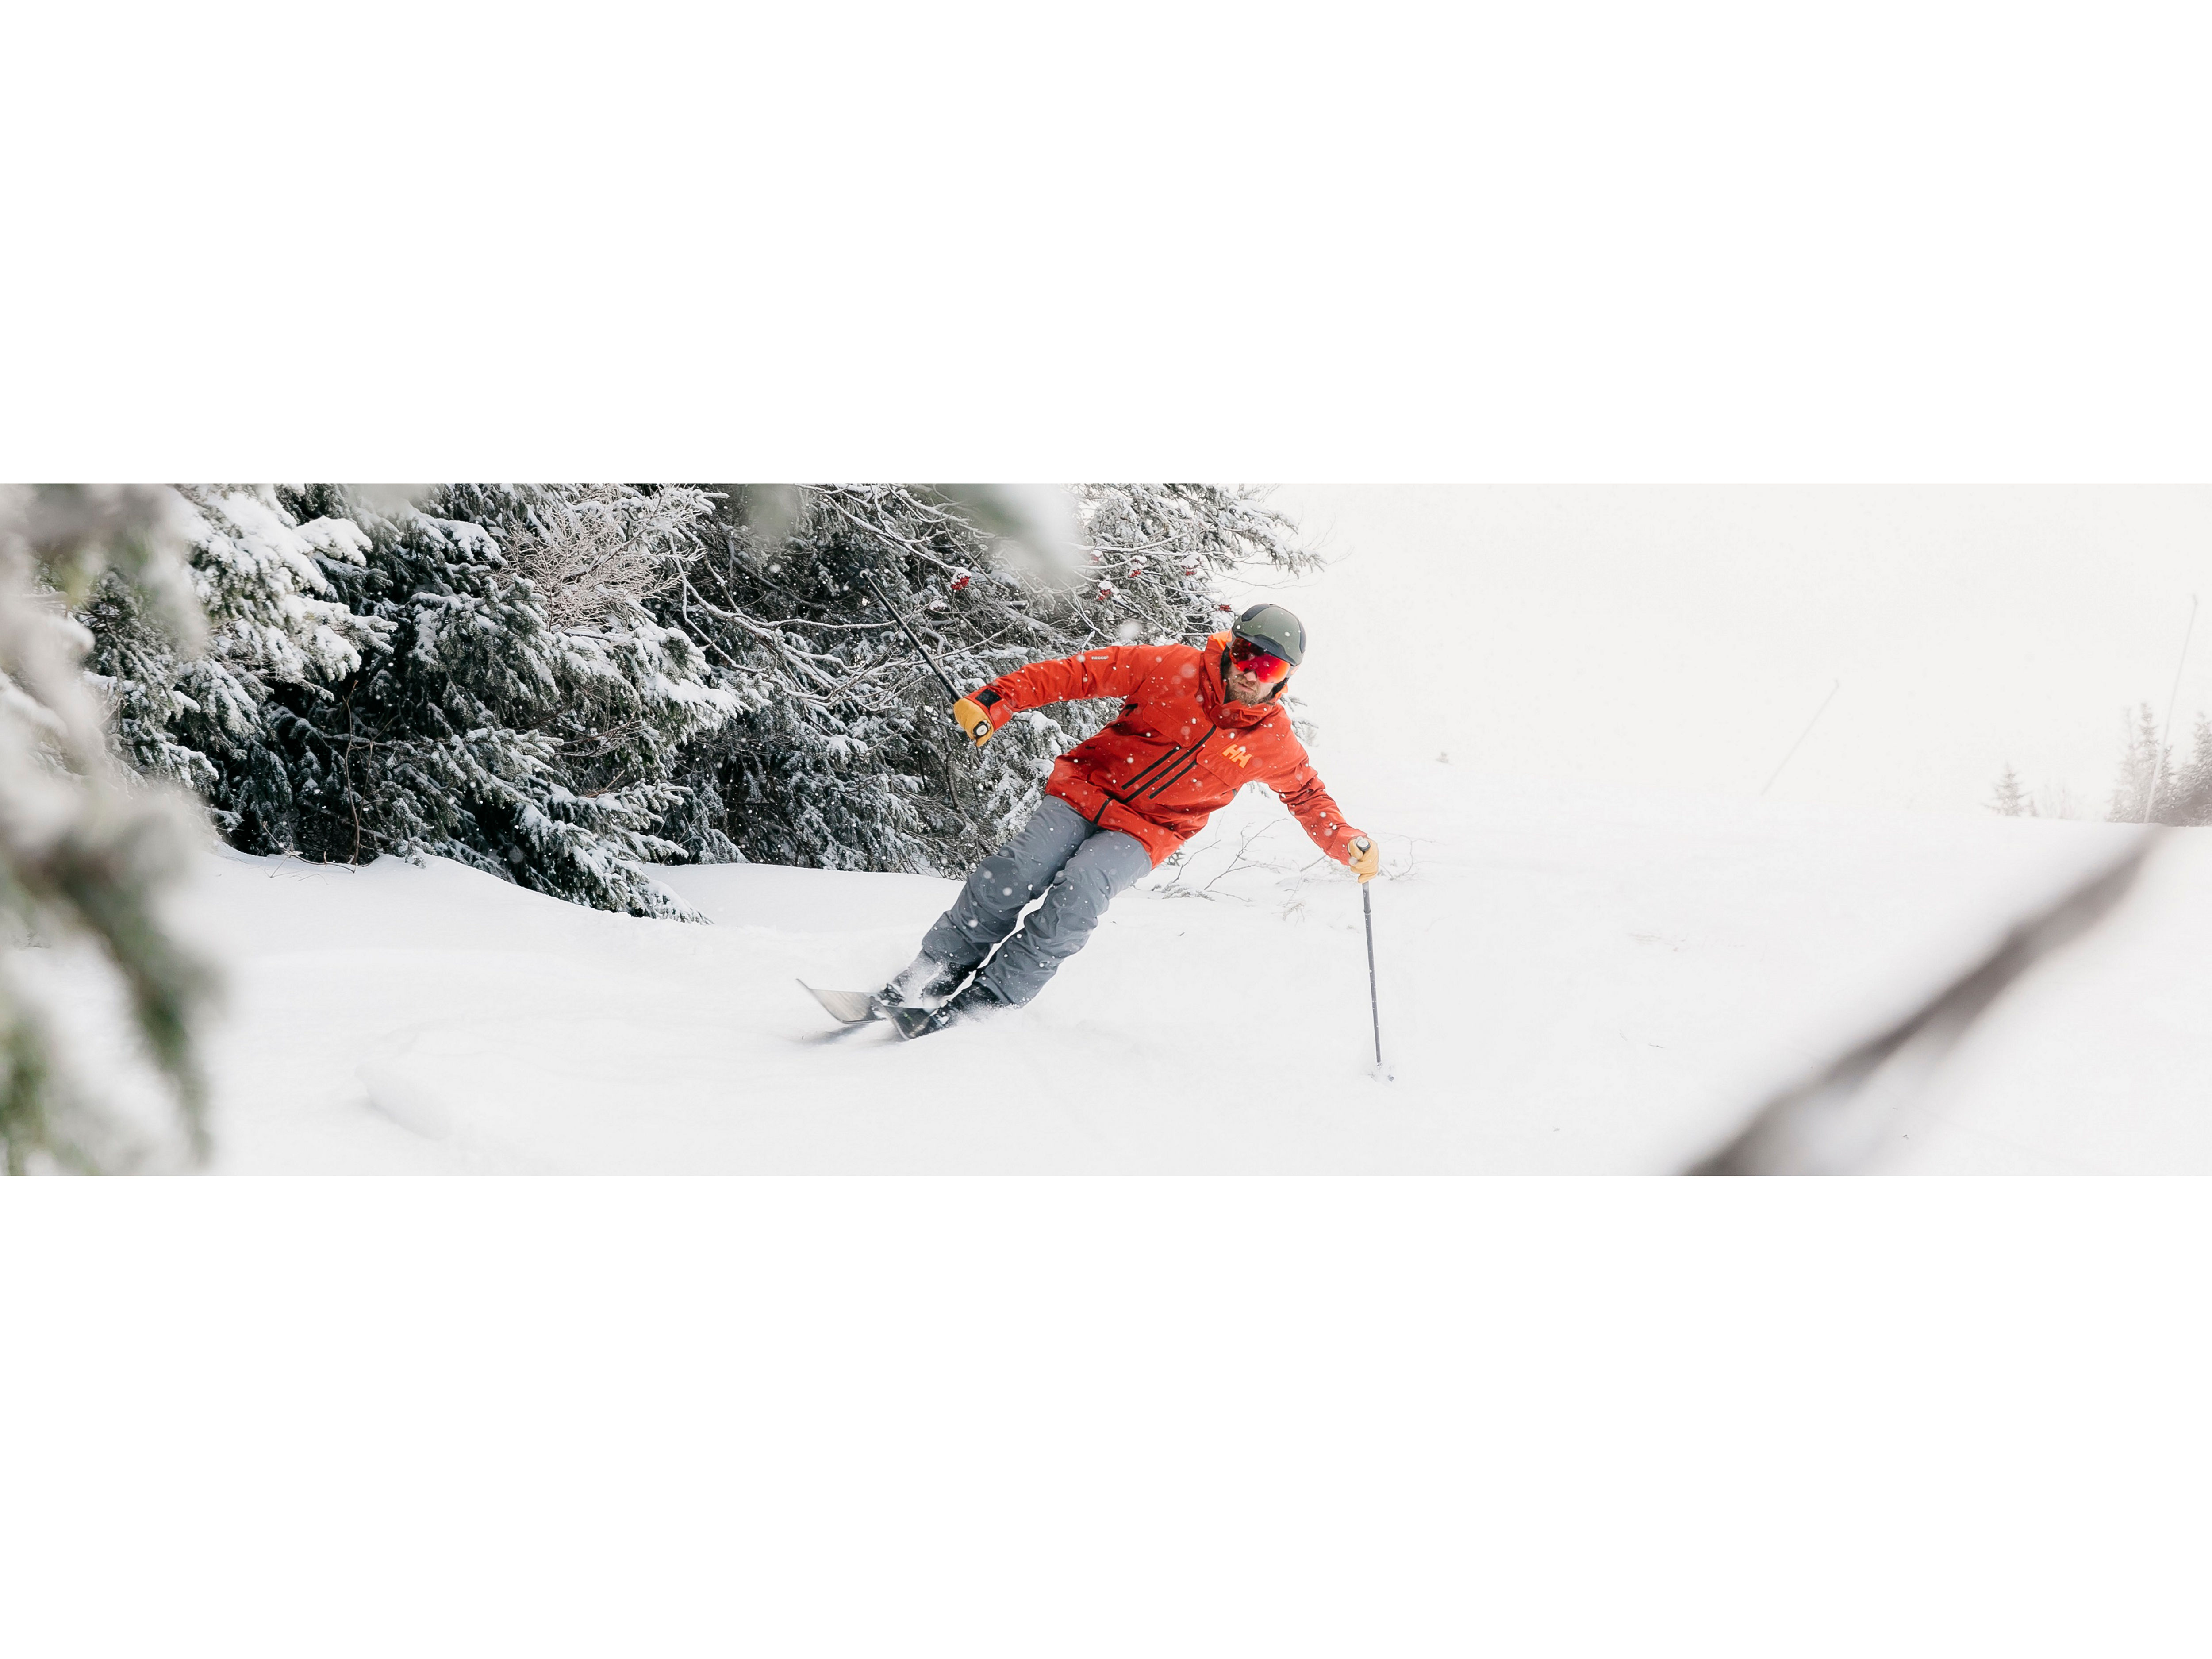 Winter Gear Guide | Stowe